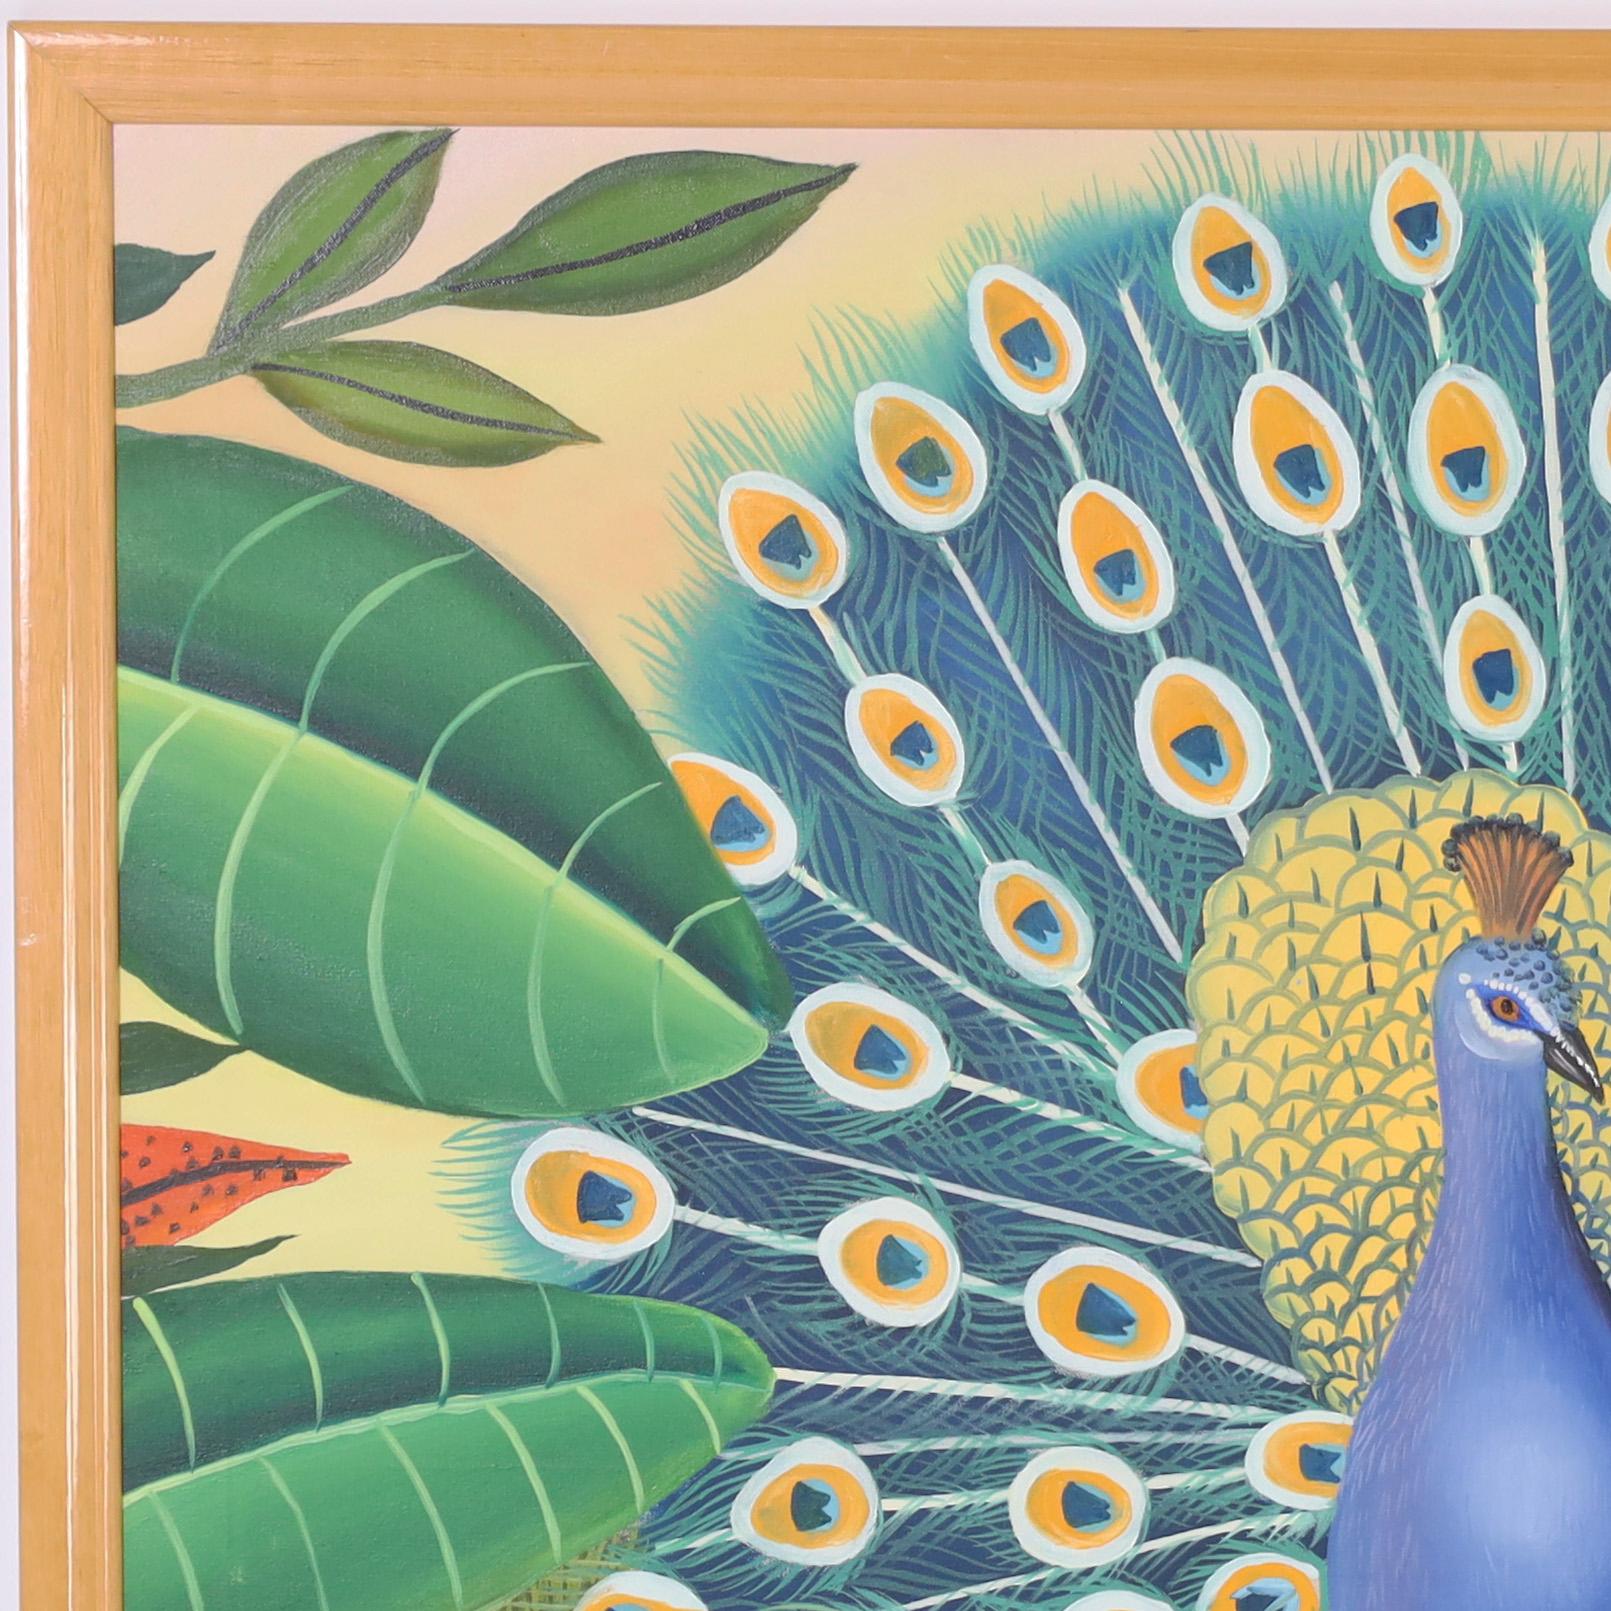 Peinture acrylique sur toile représentant un paon exhibant ses plumes dans un décor floral fantastique, exécutée dans un charmant style naïf. Signé Paradis 82 et présenté dans un cadre en bois.